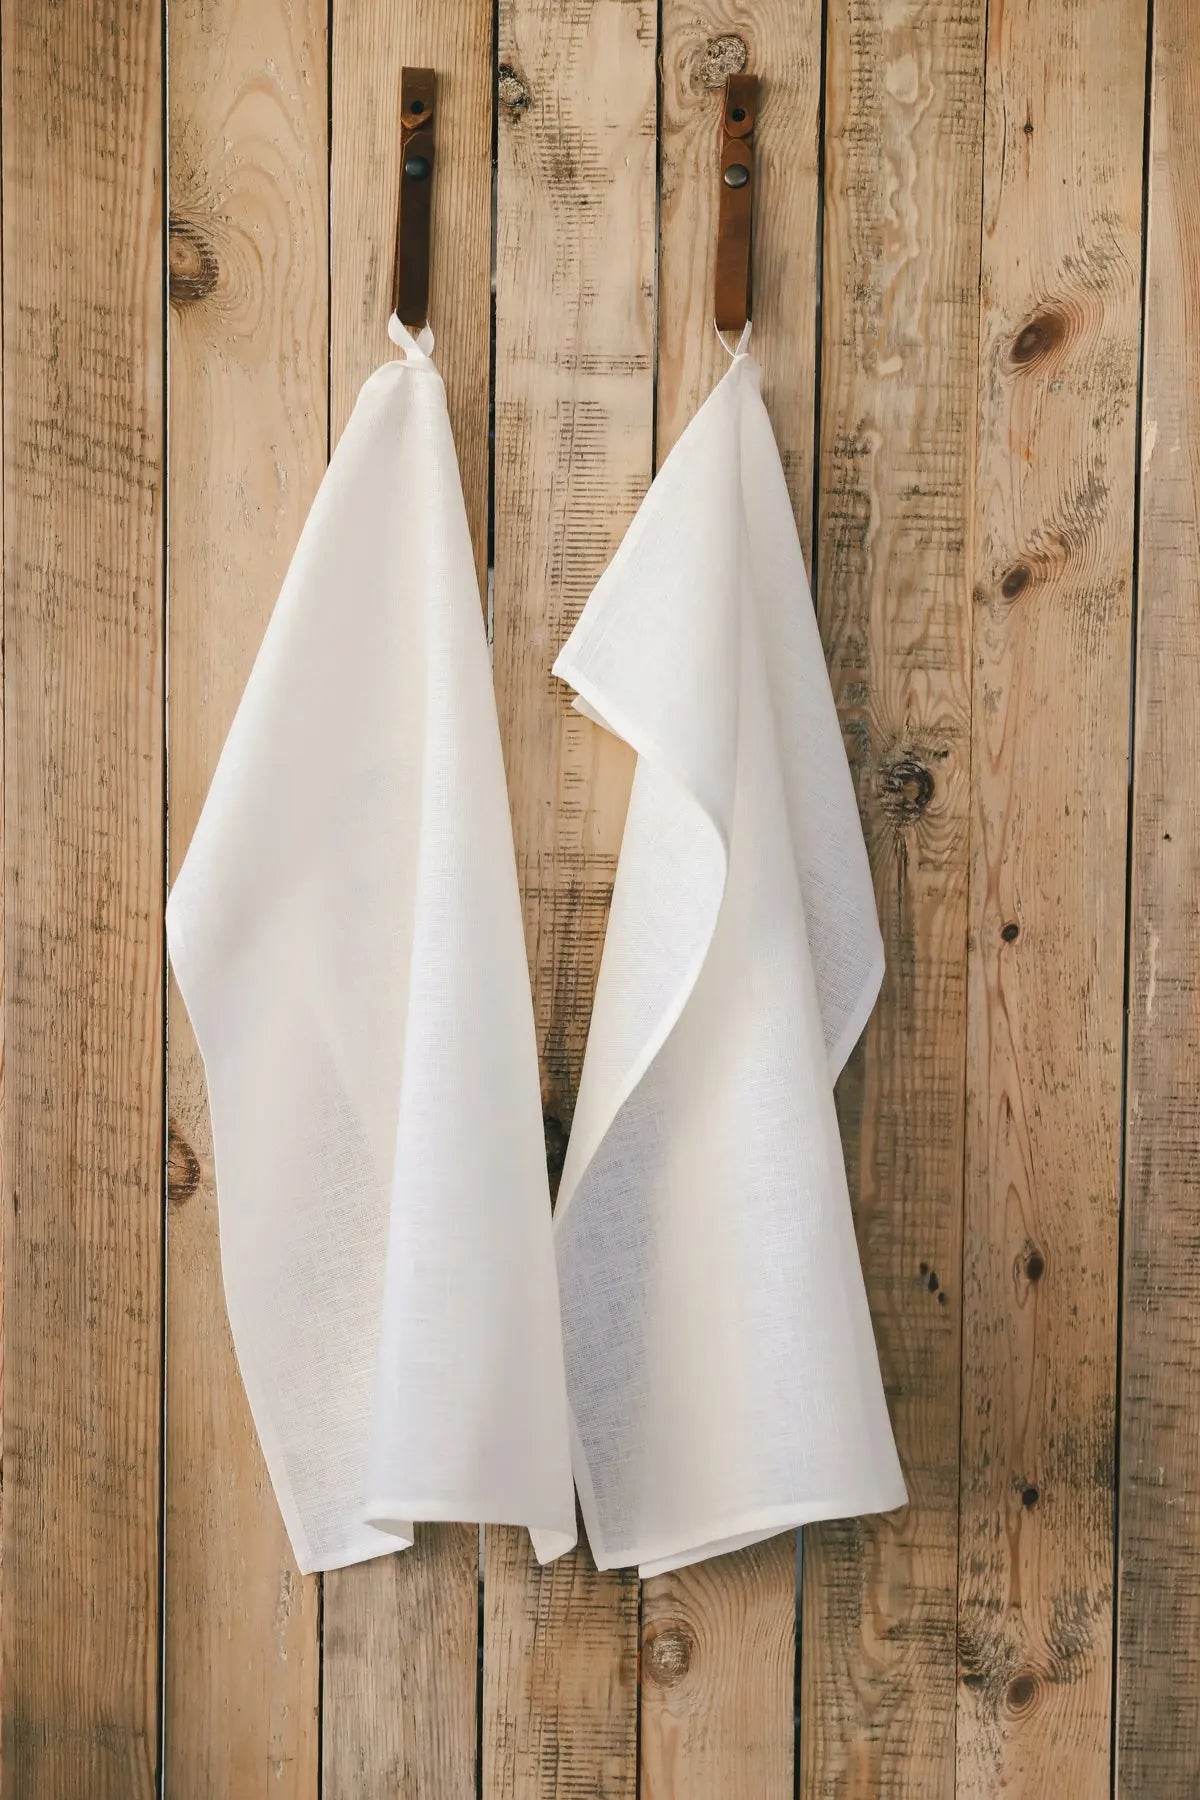 100 % Pure Plain Natural Off-White Linen Kitchen Tea Towels x 2 - Epic Linen luxury linen